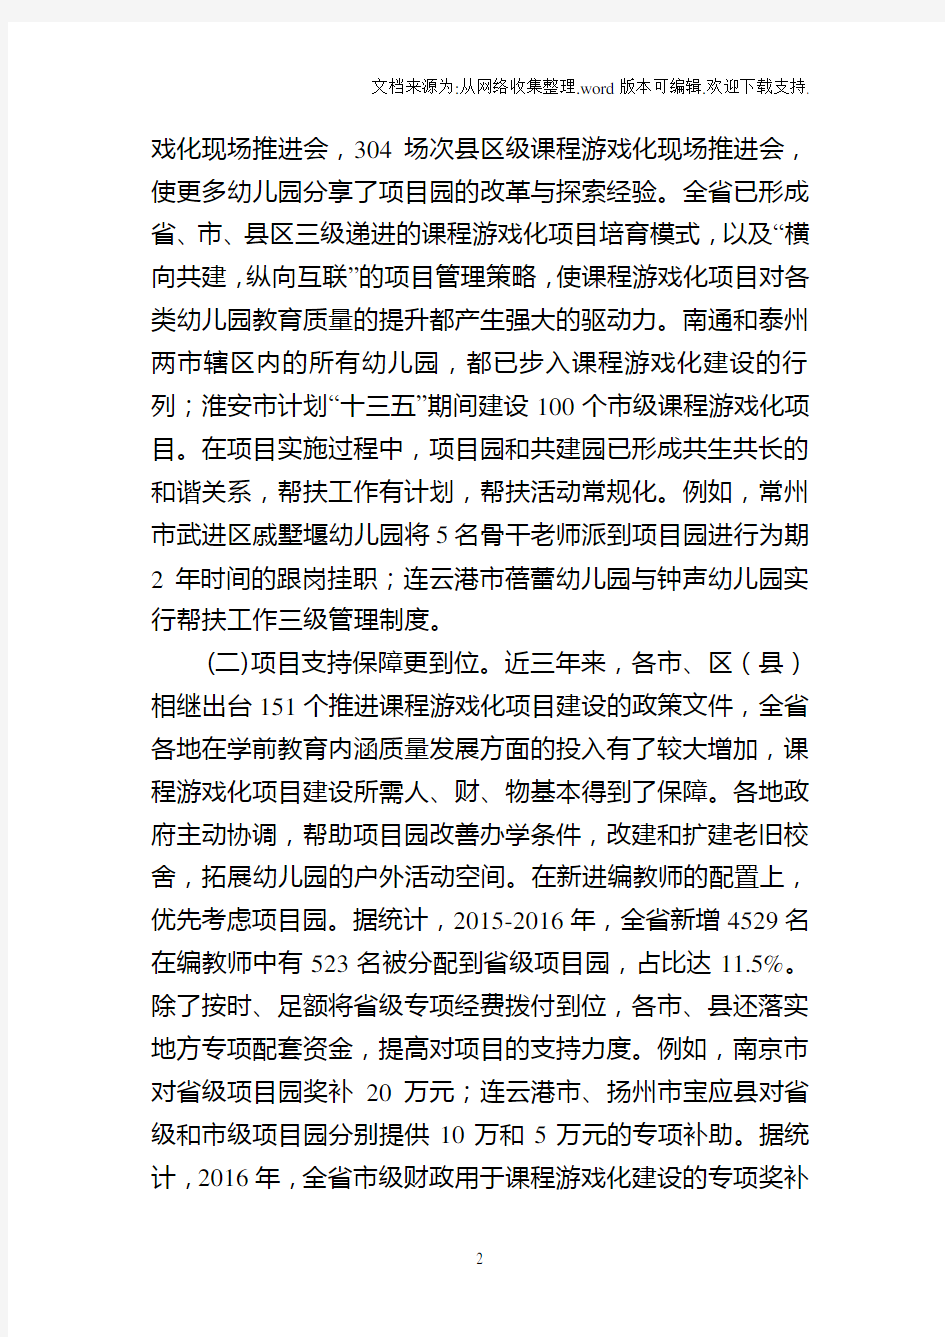 2.江苏省幼儿园课程游戏化项目“2020年度视导报告